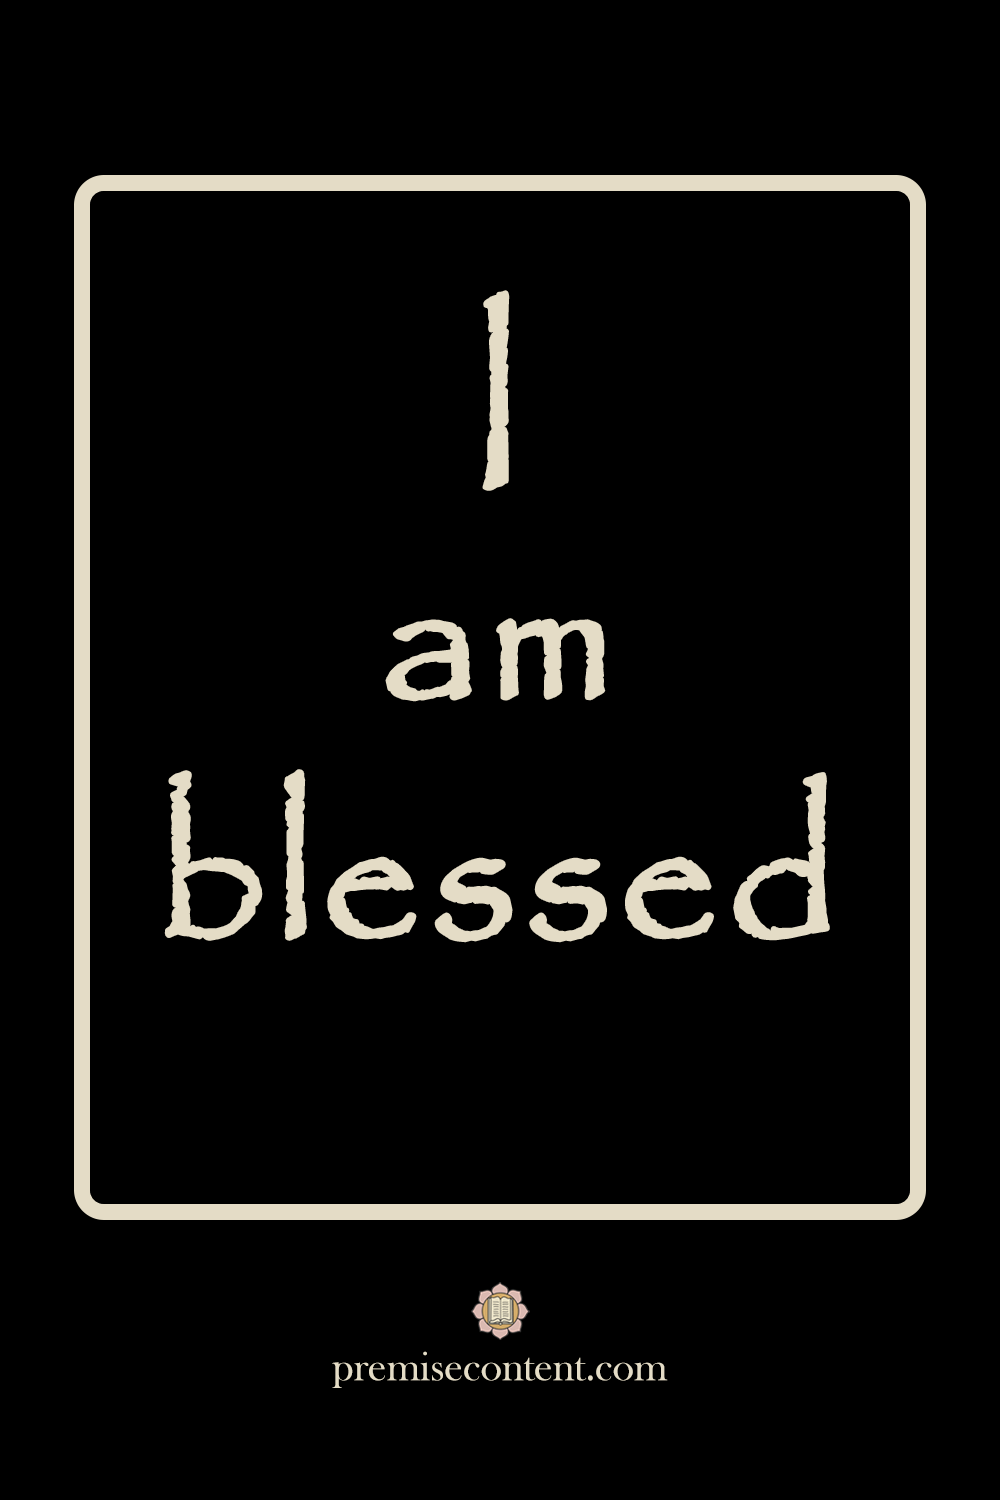 I am blessed - Positive Affirmation